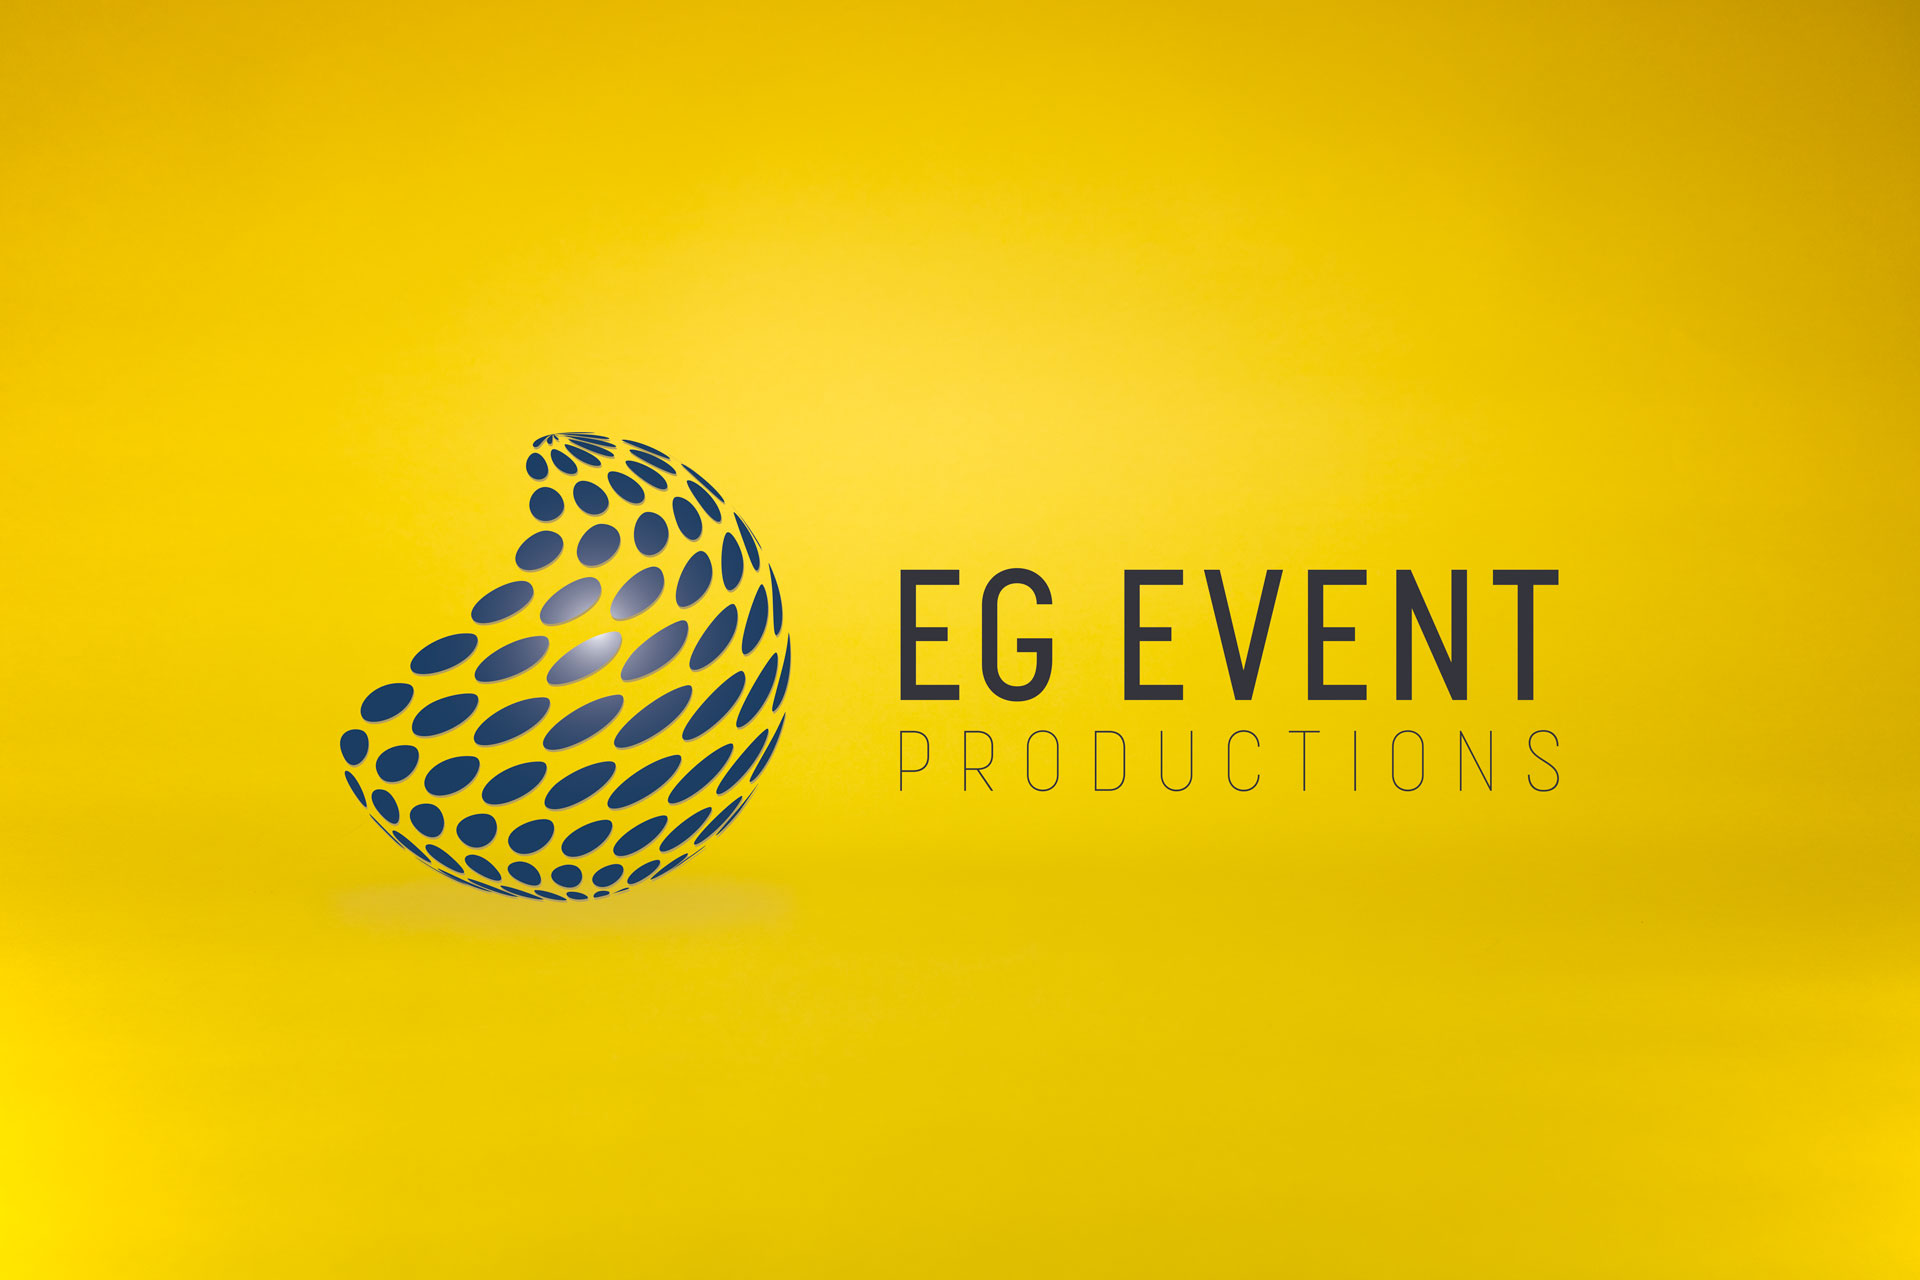 Eg Event Production Branding